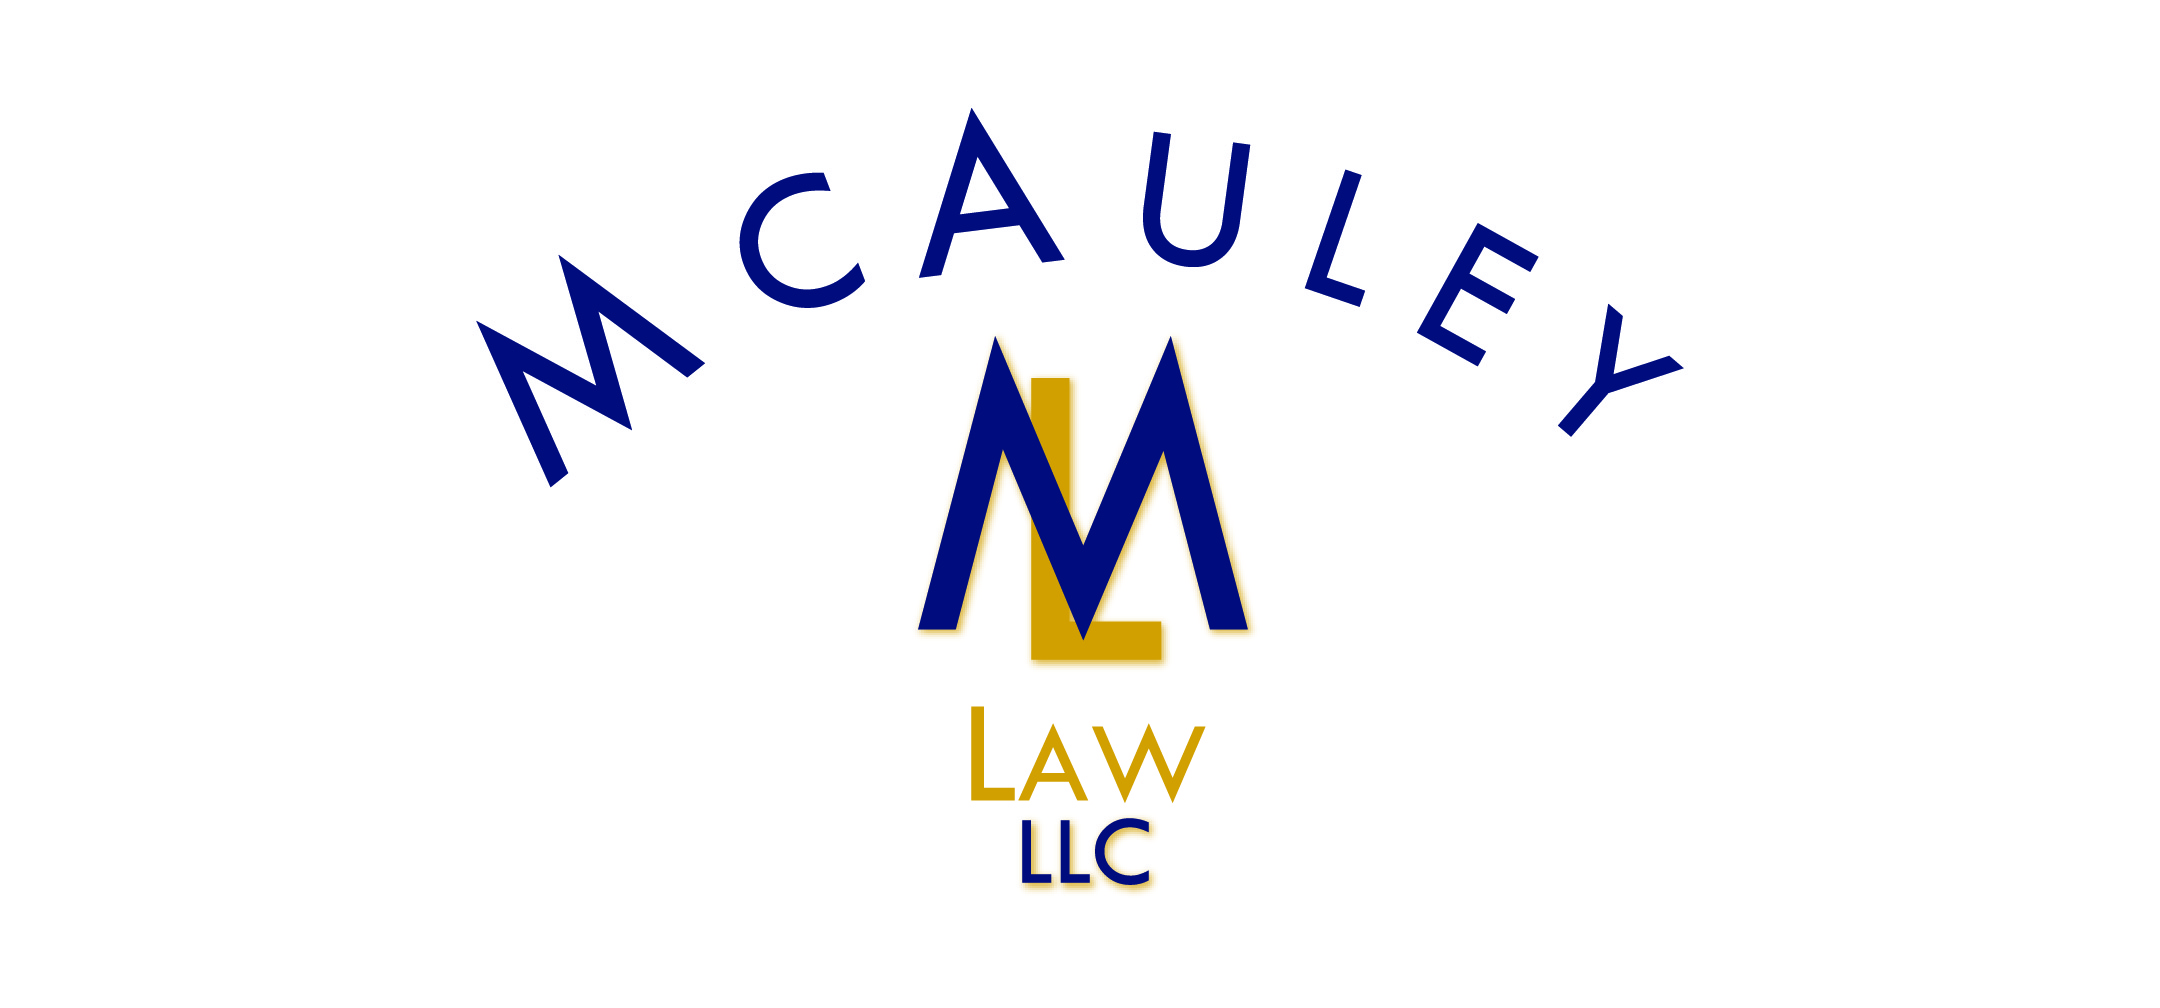 McAuley Law LLC